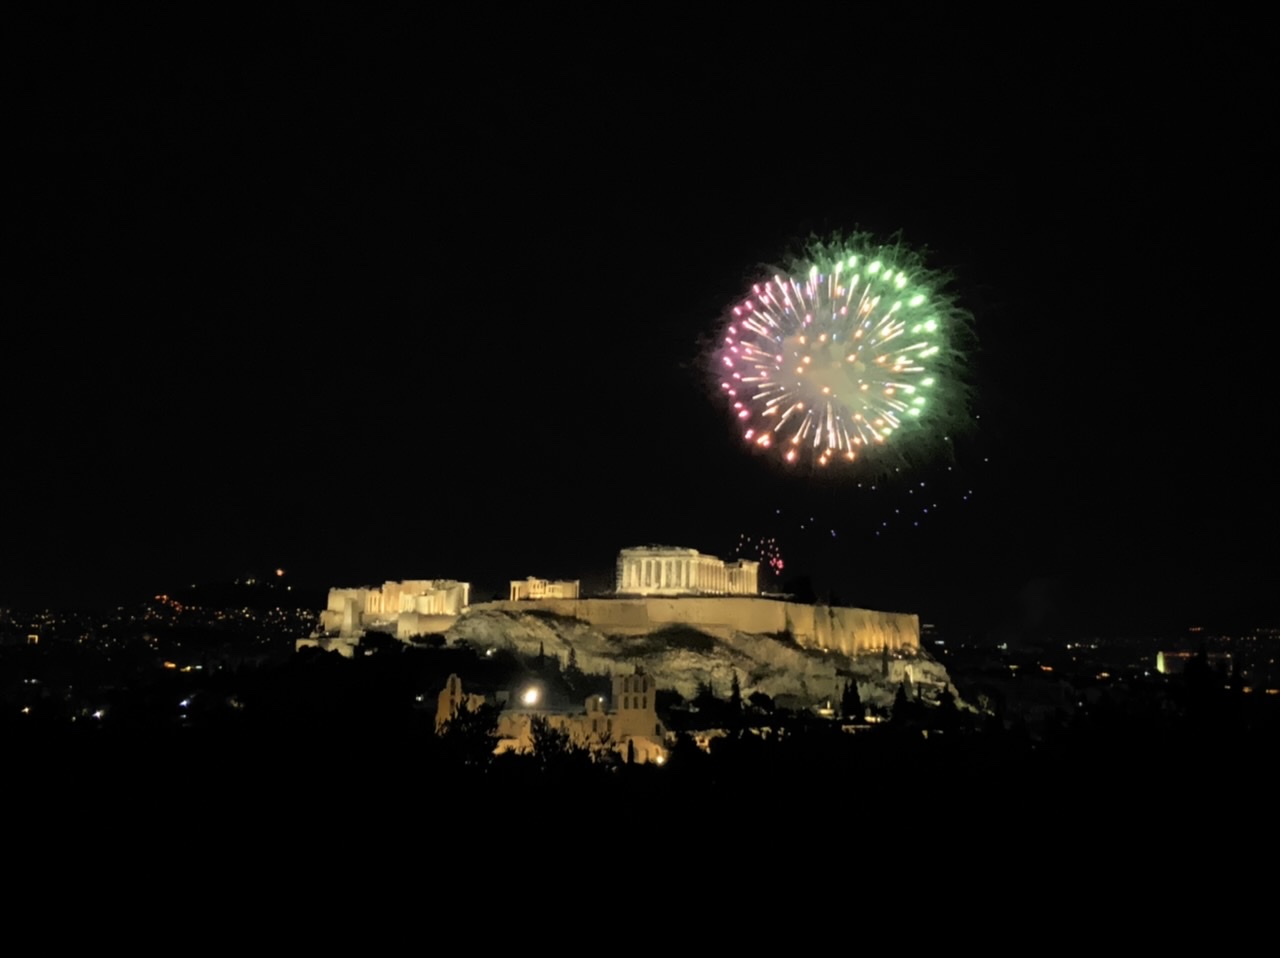 A Acrópole de Atenas à noite com fogos de artifício - um sonho!